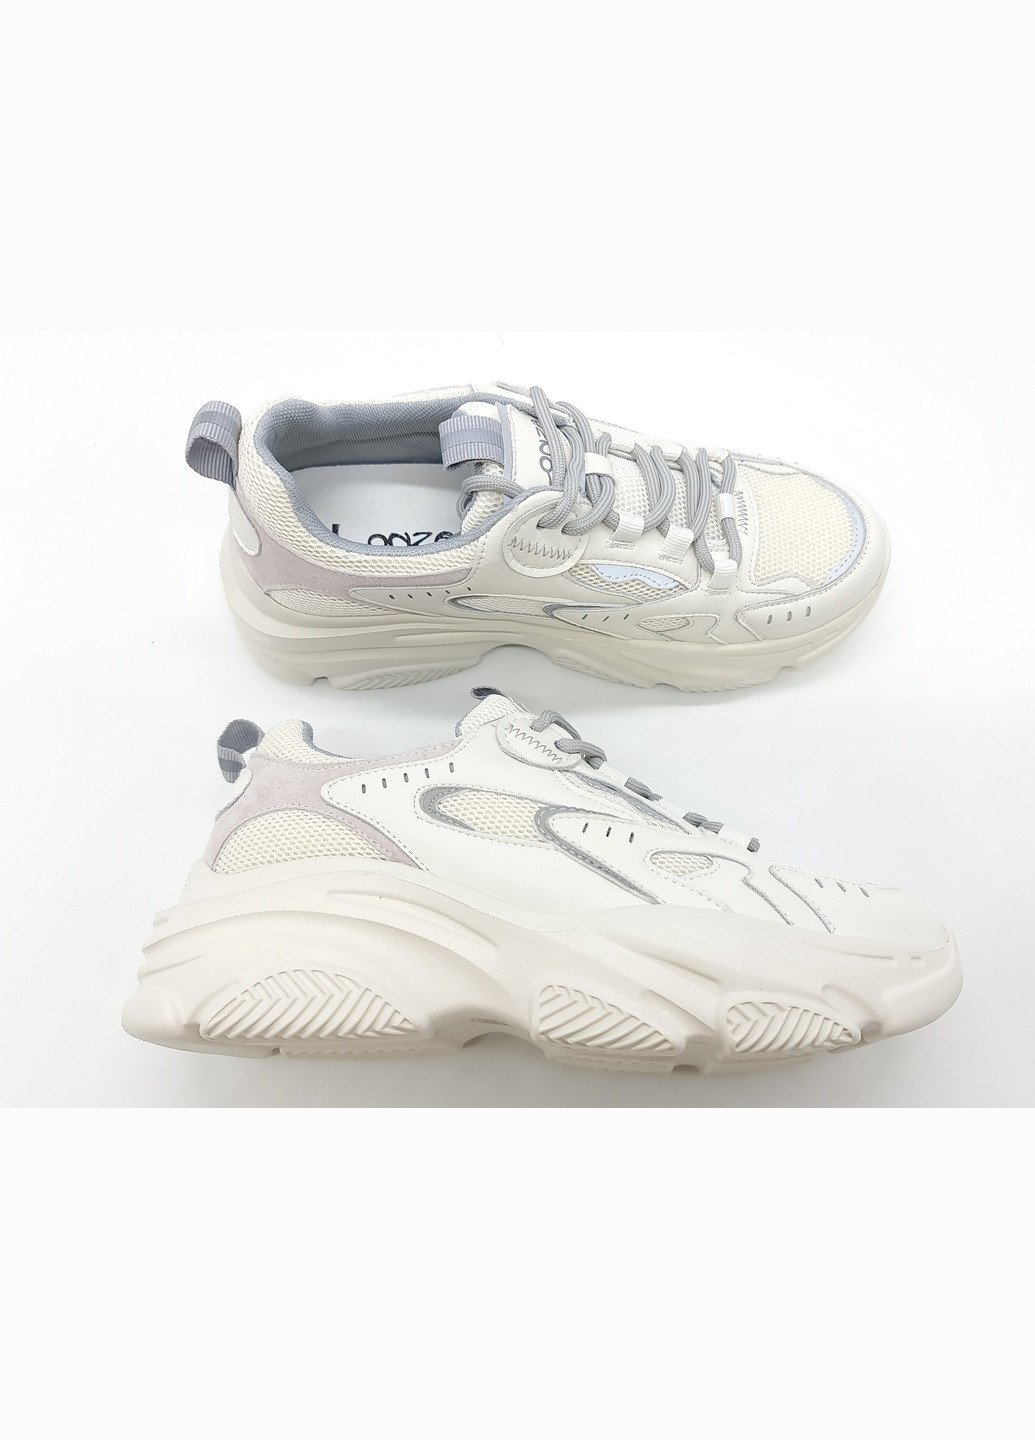 Білі всесезонні жіночі кросівки білі шкіряні l-11-8 23,5 см (р) Lonza